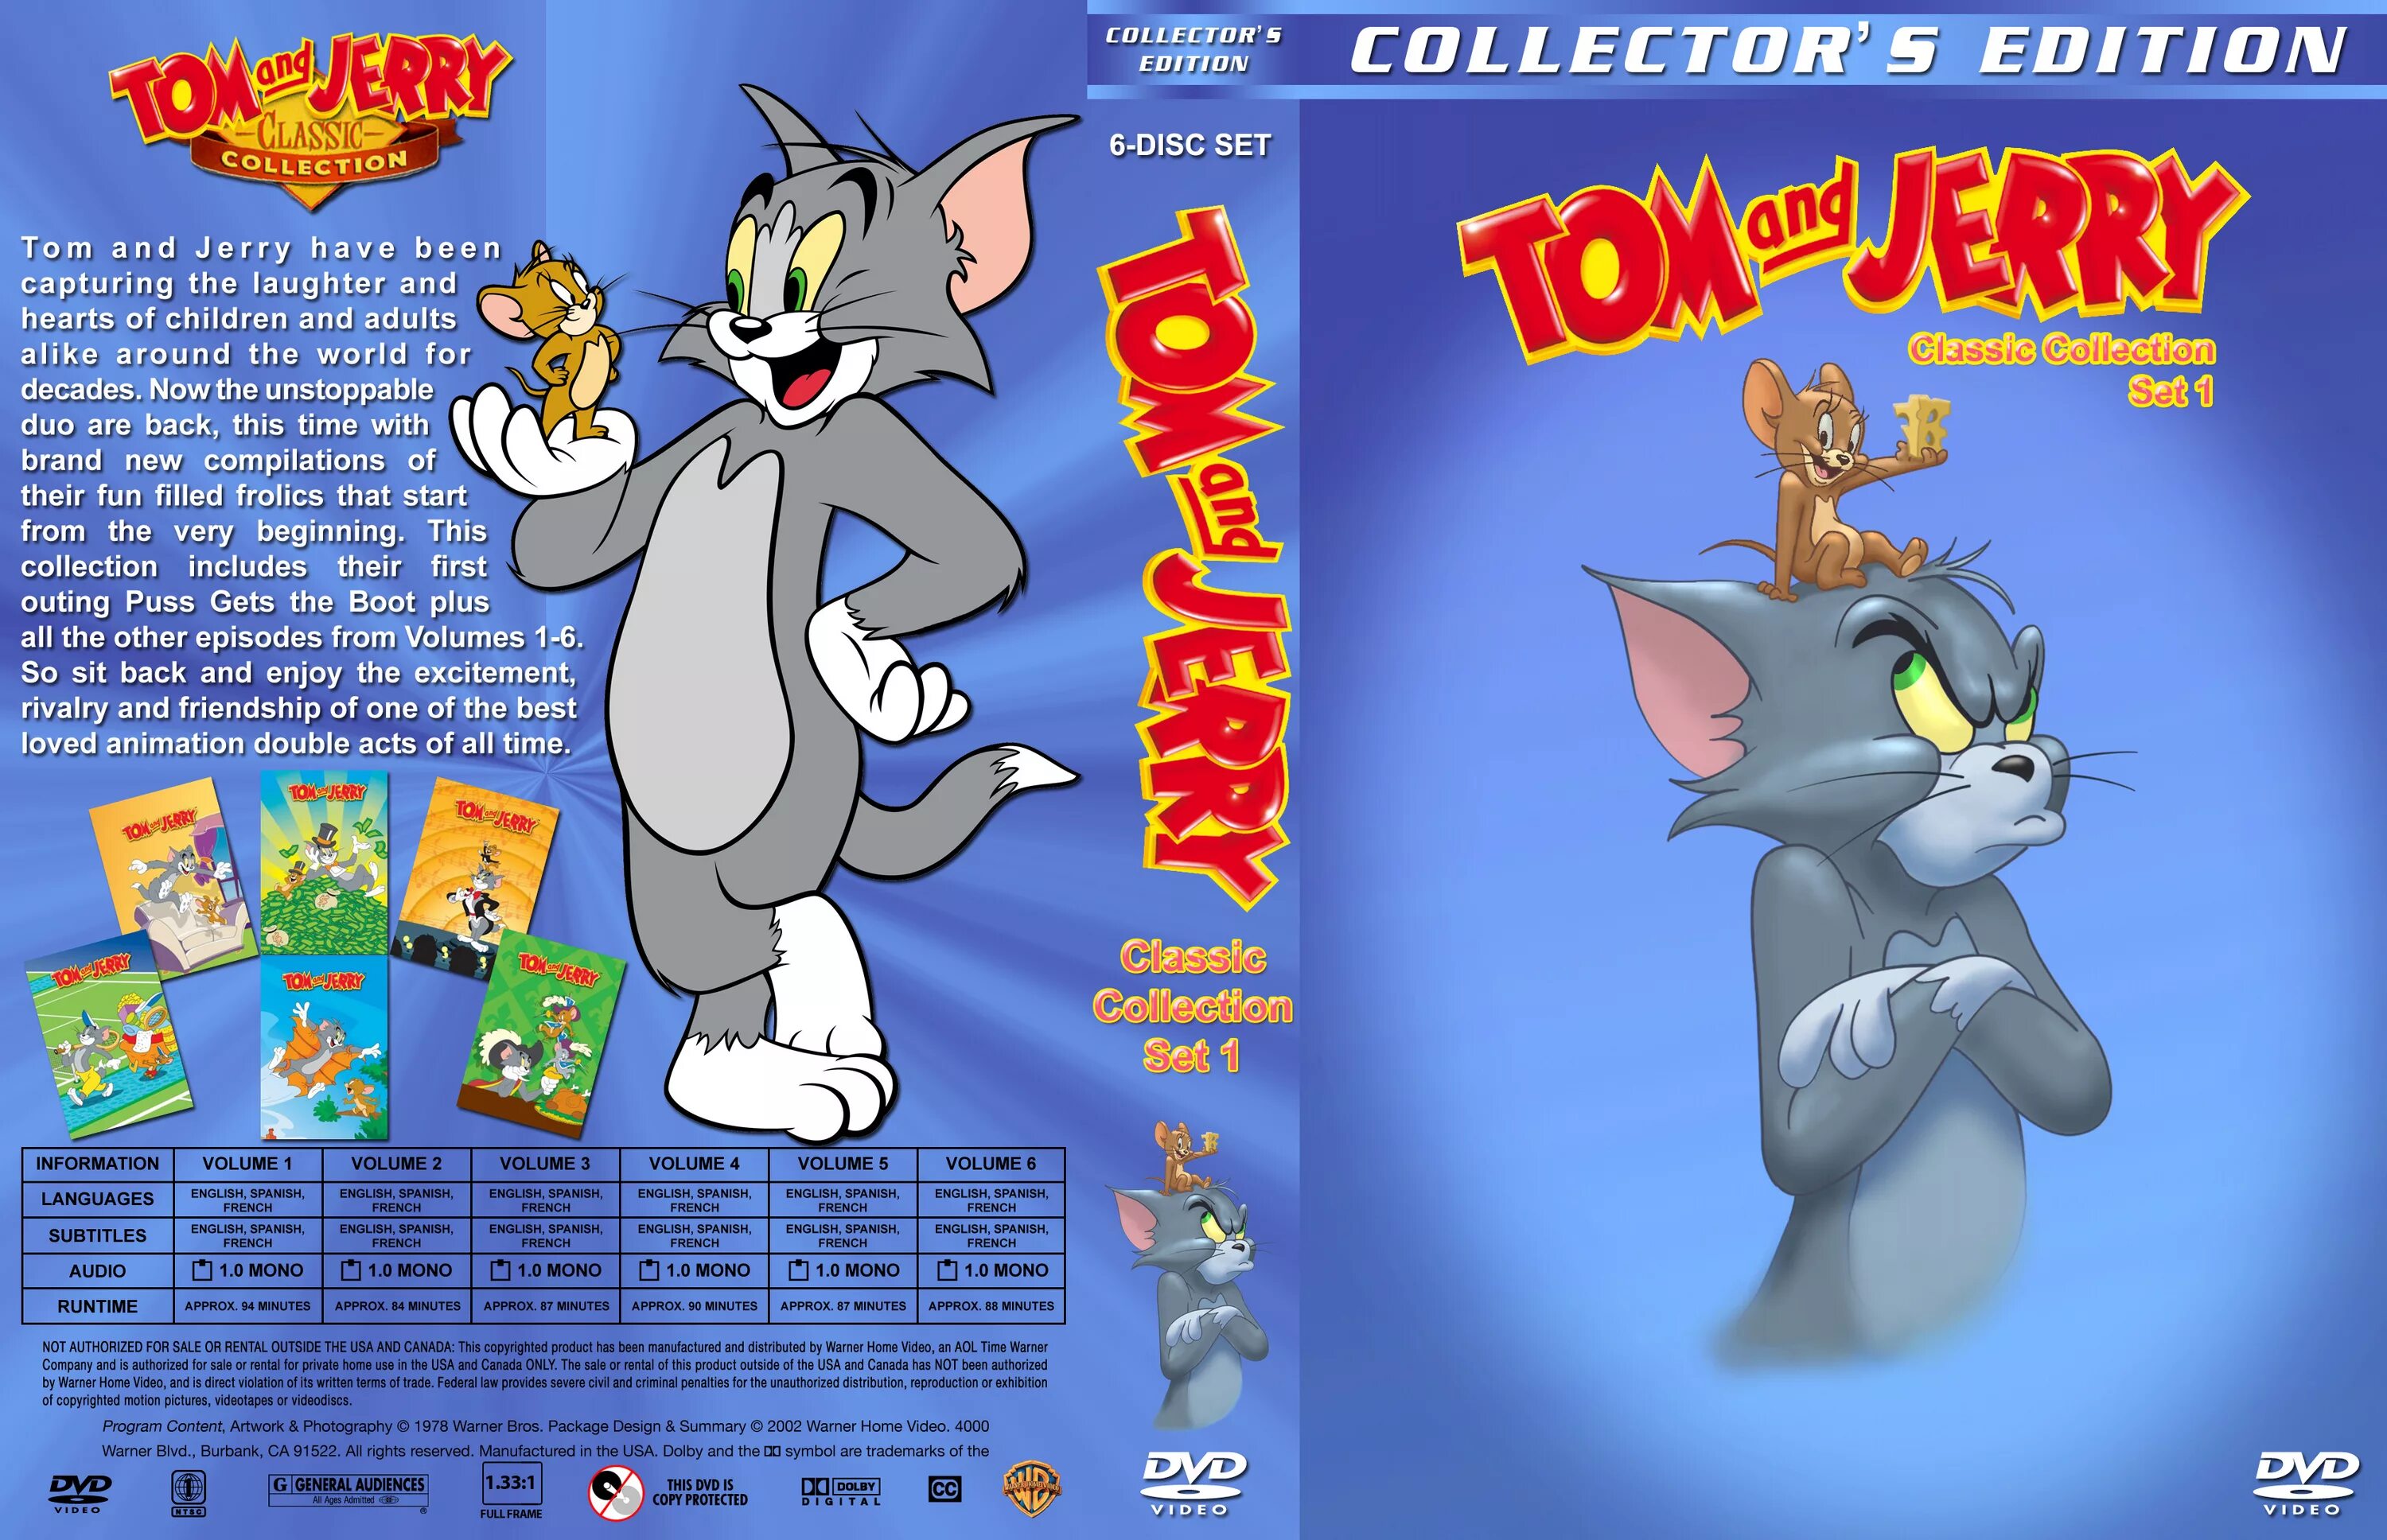 Том и джерри режиссер. Том и Джерри двд том 1. Том и Джерри (Tom and Jerry) 1940. Tom and Jerry (2021) том и Джерри обложка. Tom and Jerry collection DVD.